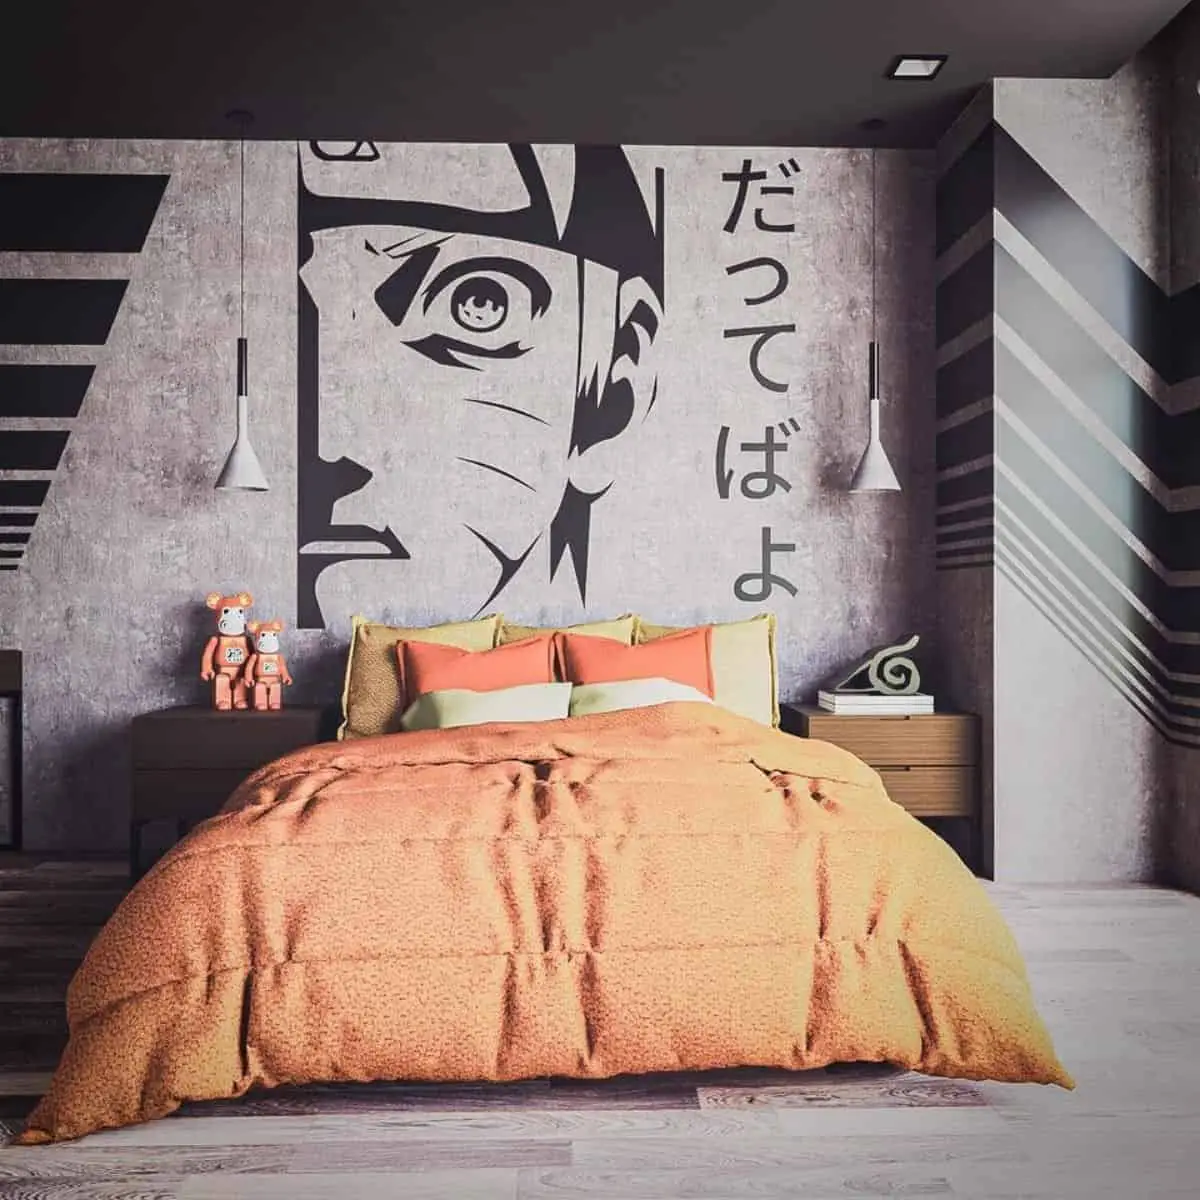 Naruto bedroom idea